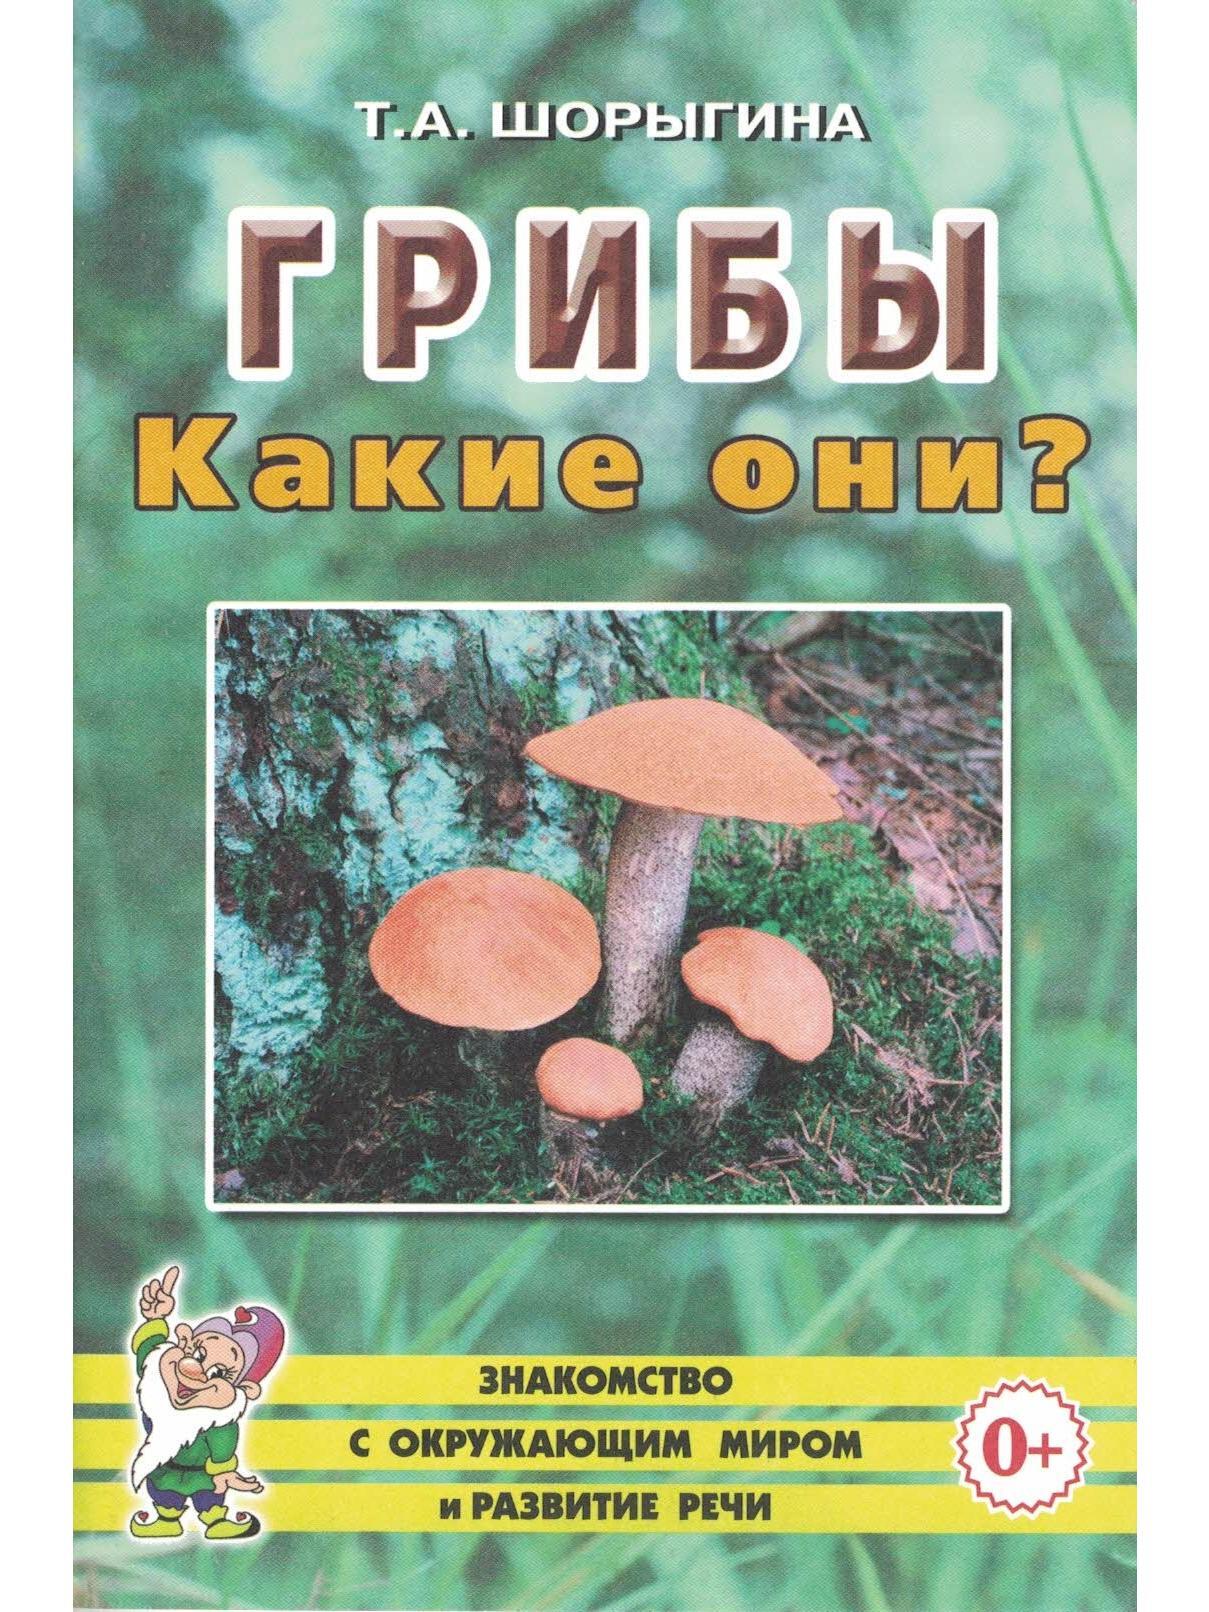 Шорыгина т.а. «грибы. Какие они?». Издательство «Гном и д». Москва 2010.